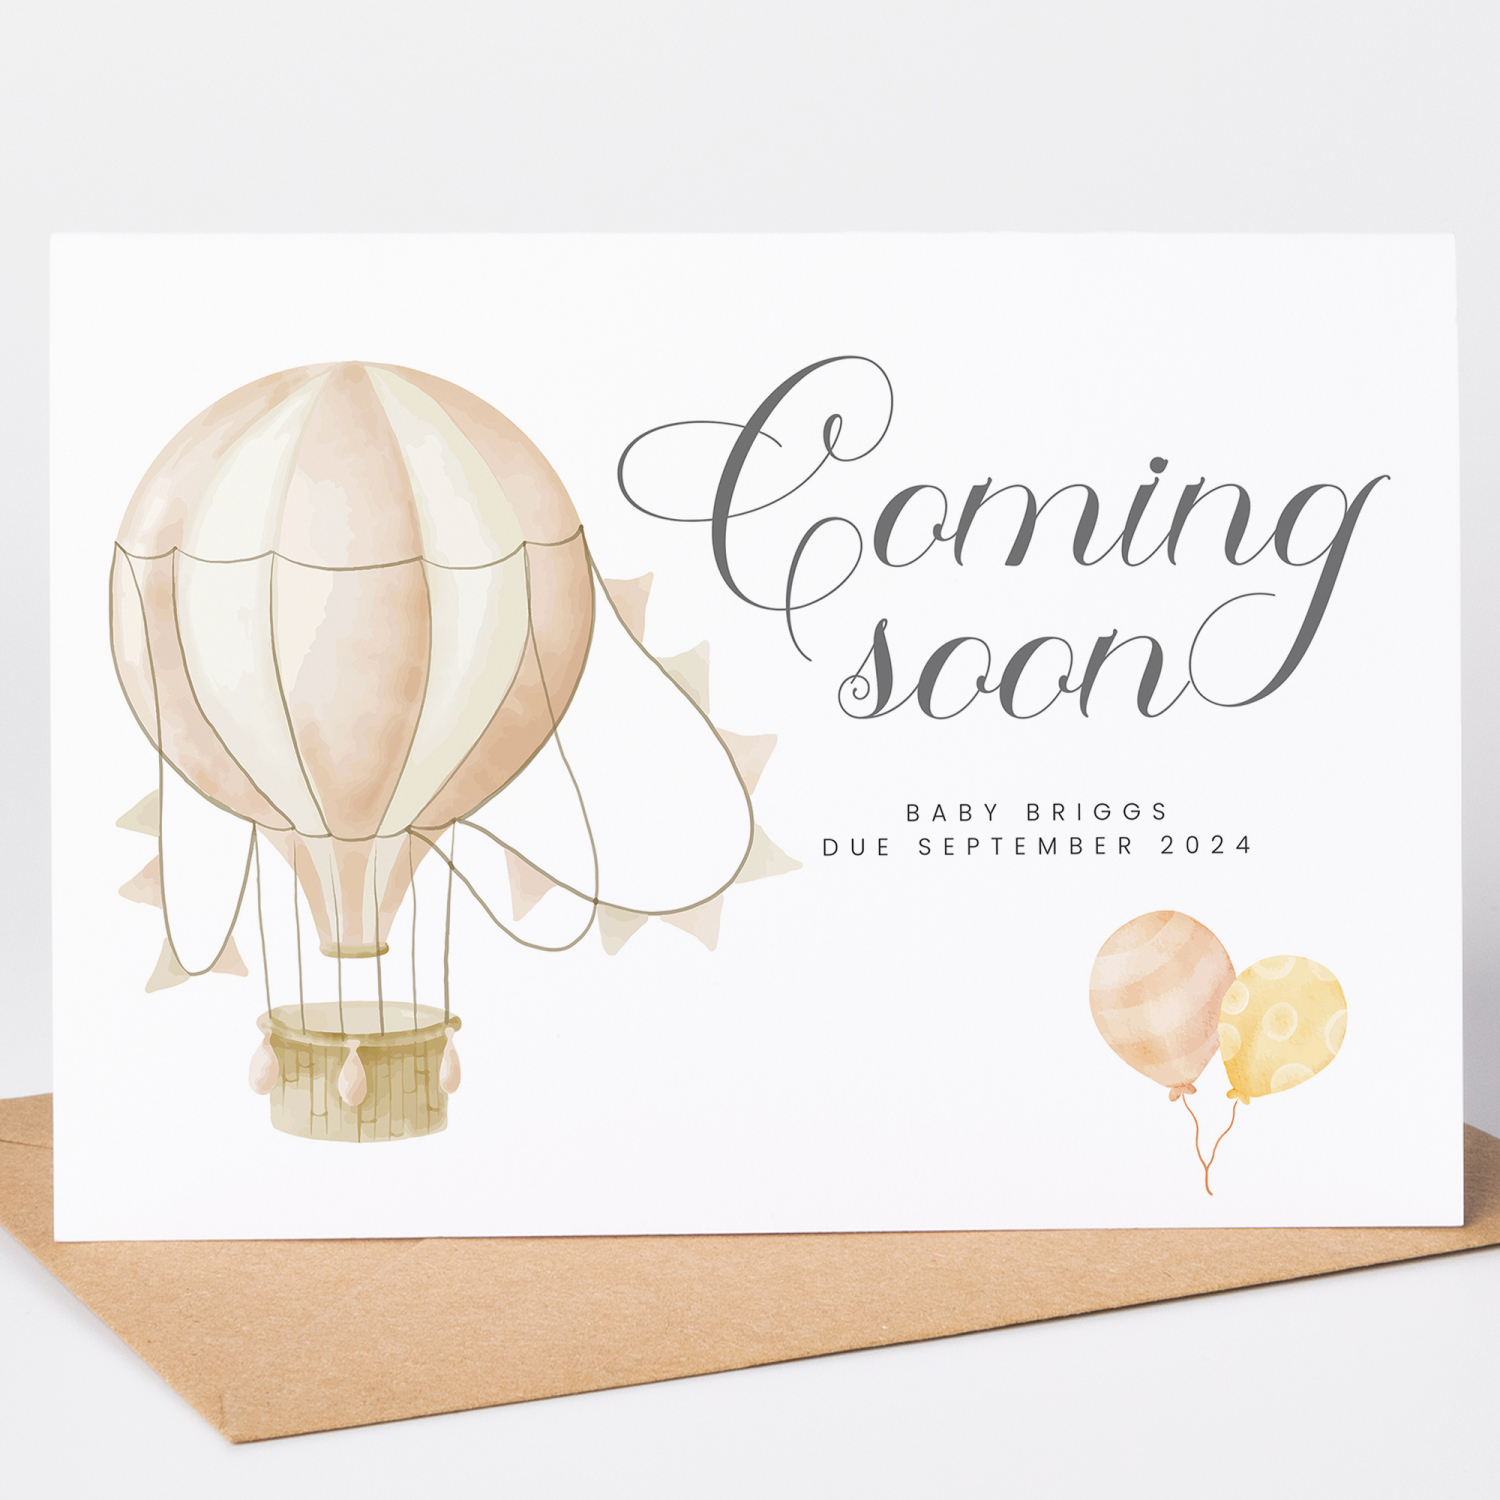 Pregnancy Announcement Hotair Balloon Coming Soon Card - A6 - 4.1" x 5.8"